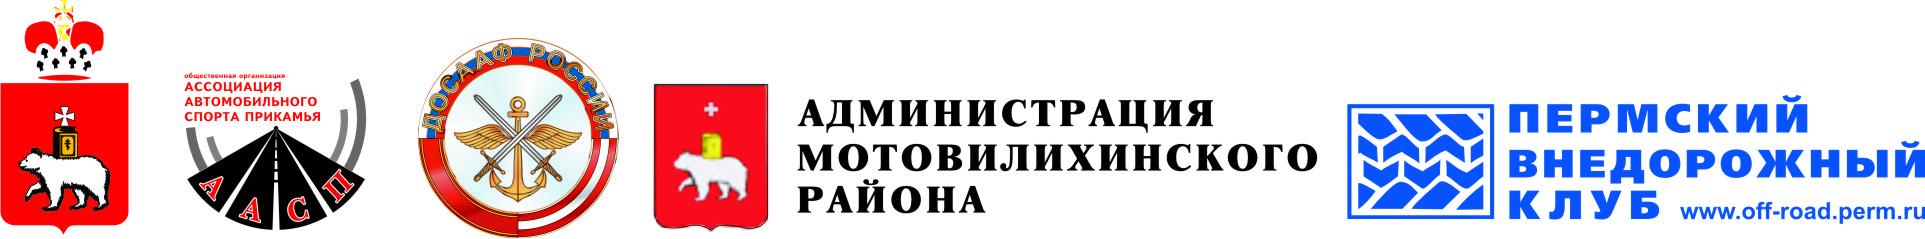 Администрация пермь телефон. Администрация Мотовилихинского района. Администрация города Перми. Администрация Перми логотип. Логотип Мотовилихинского района.